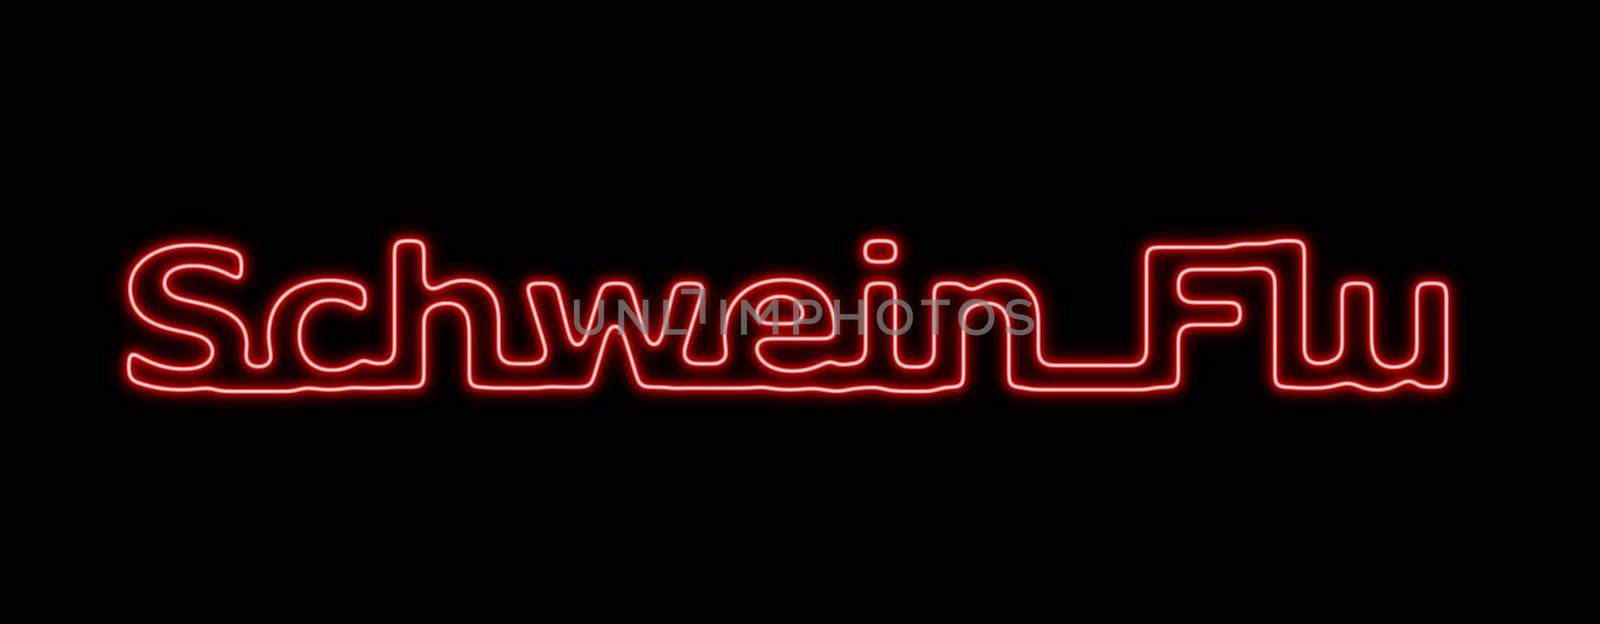 Neon sing about the schwein flu on black background